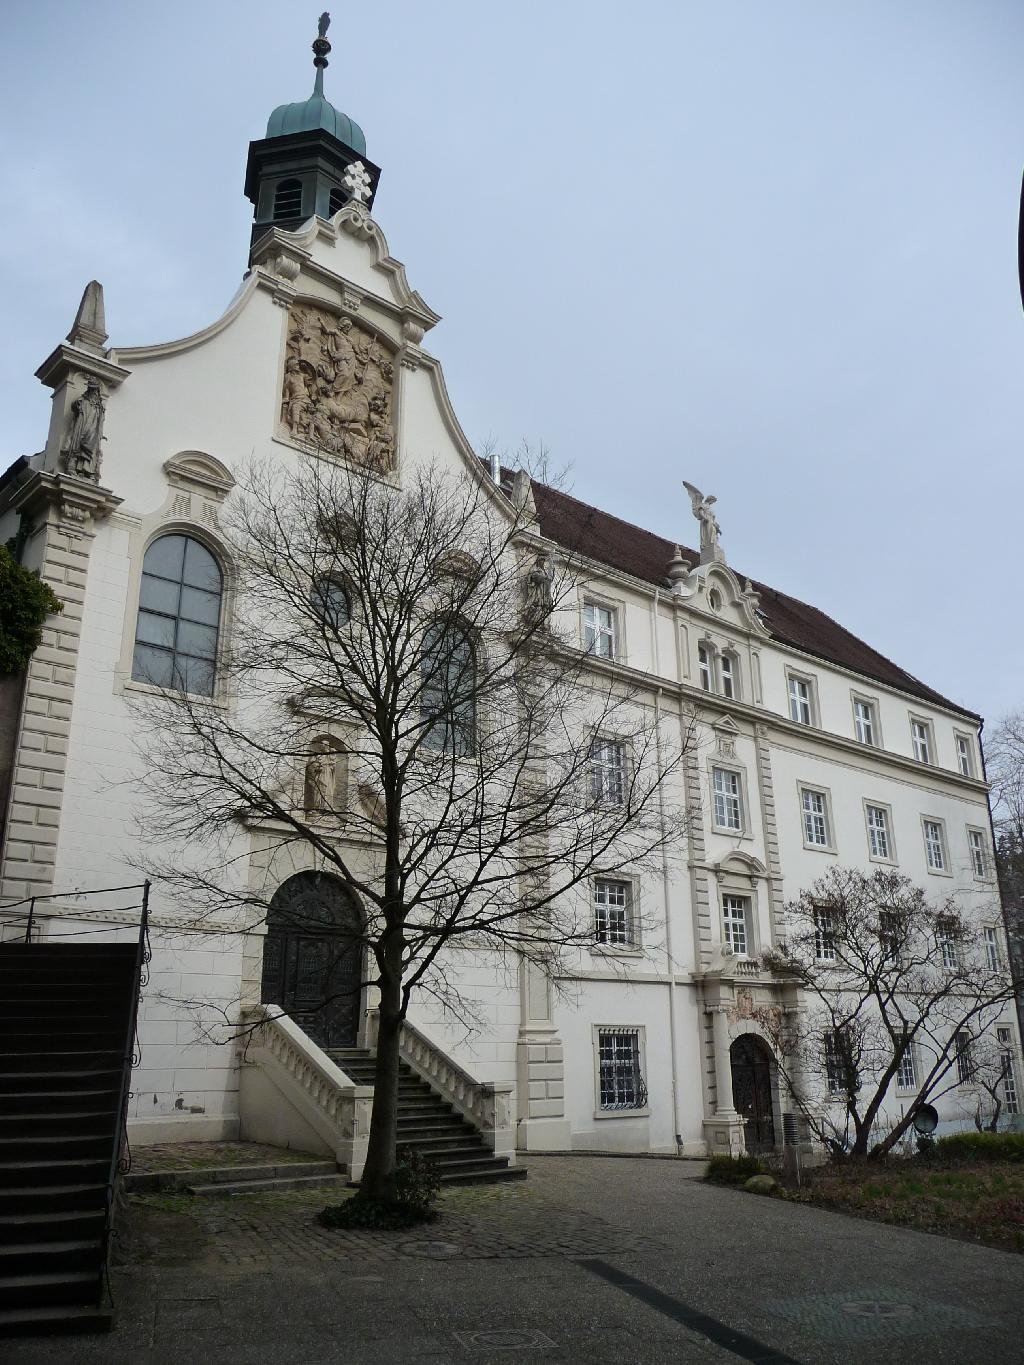 Kloster von heiligen Grab in Baden-Baden